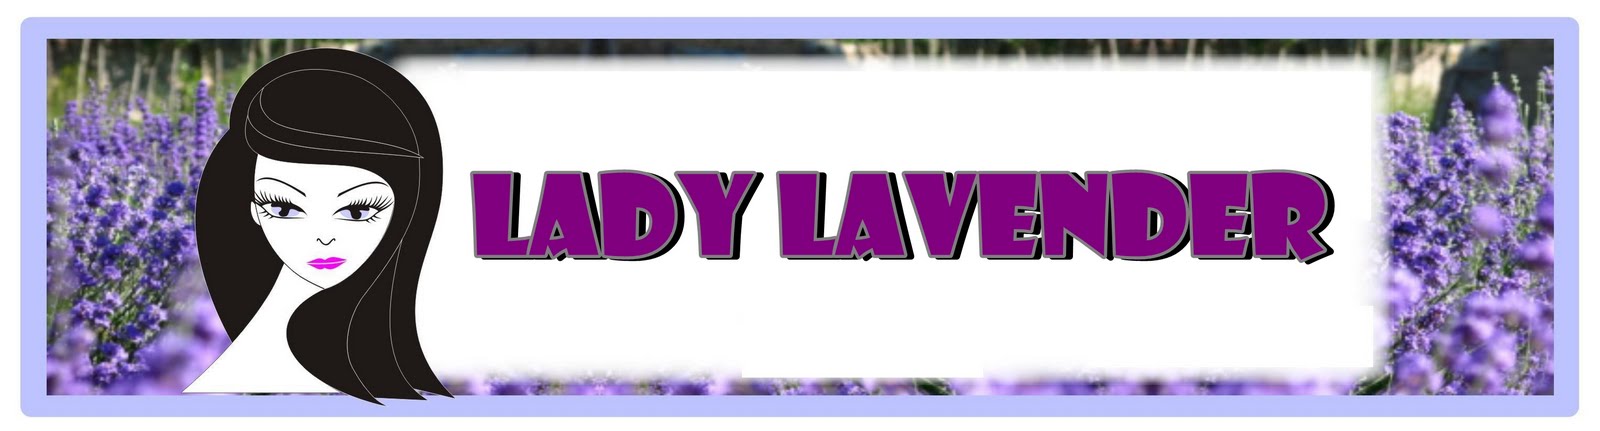 LadyLavender